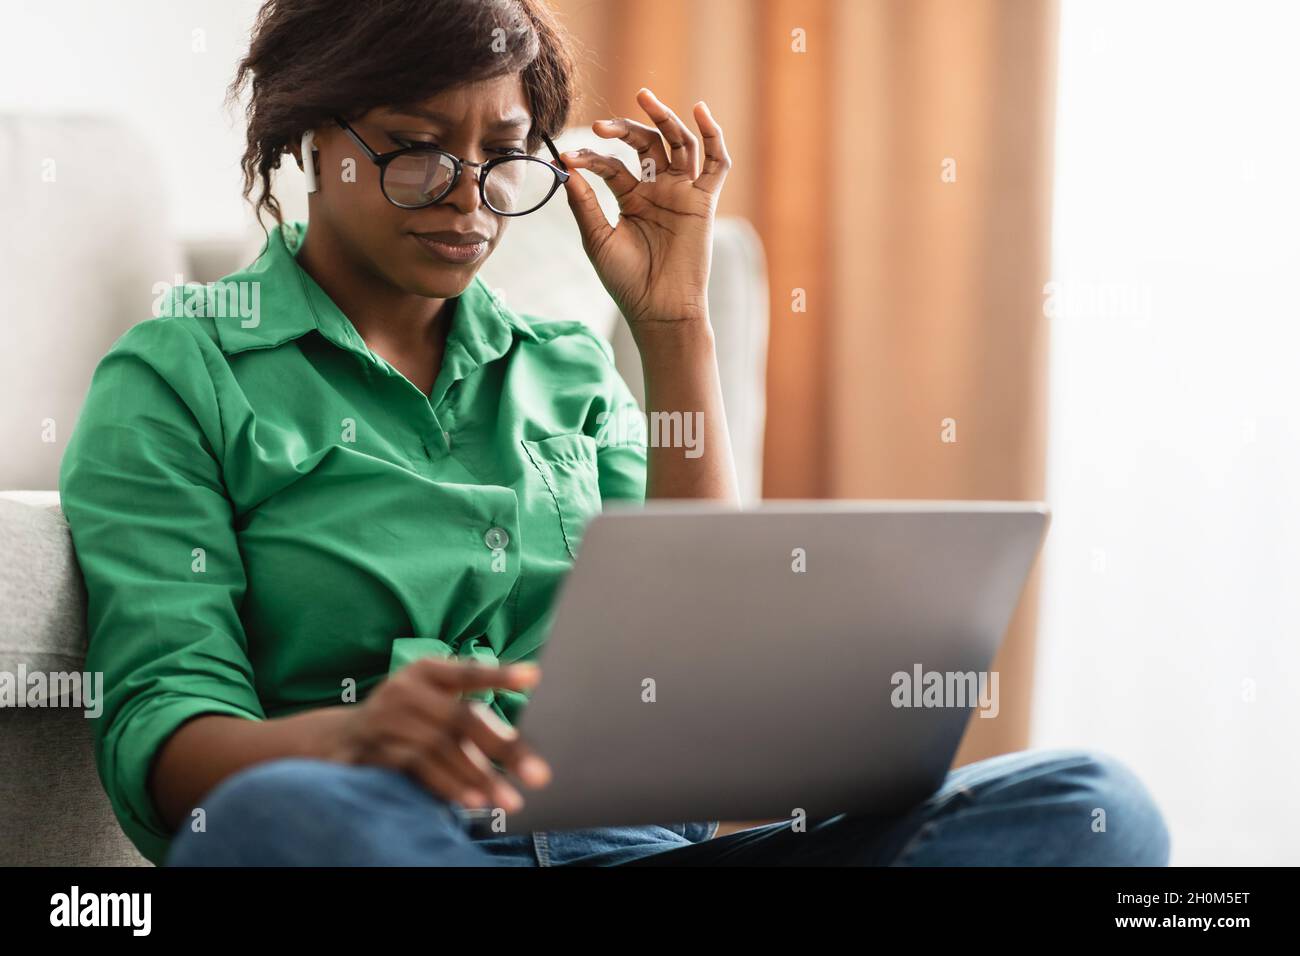 Femme noire avec une mauvaise vue utilisant un ordinateur portable portant des lunettes de vue intérieur Banque D'Images